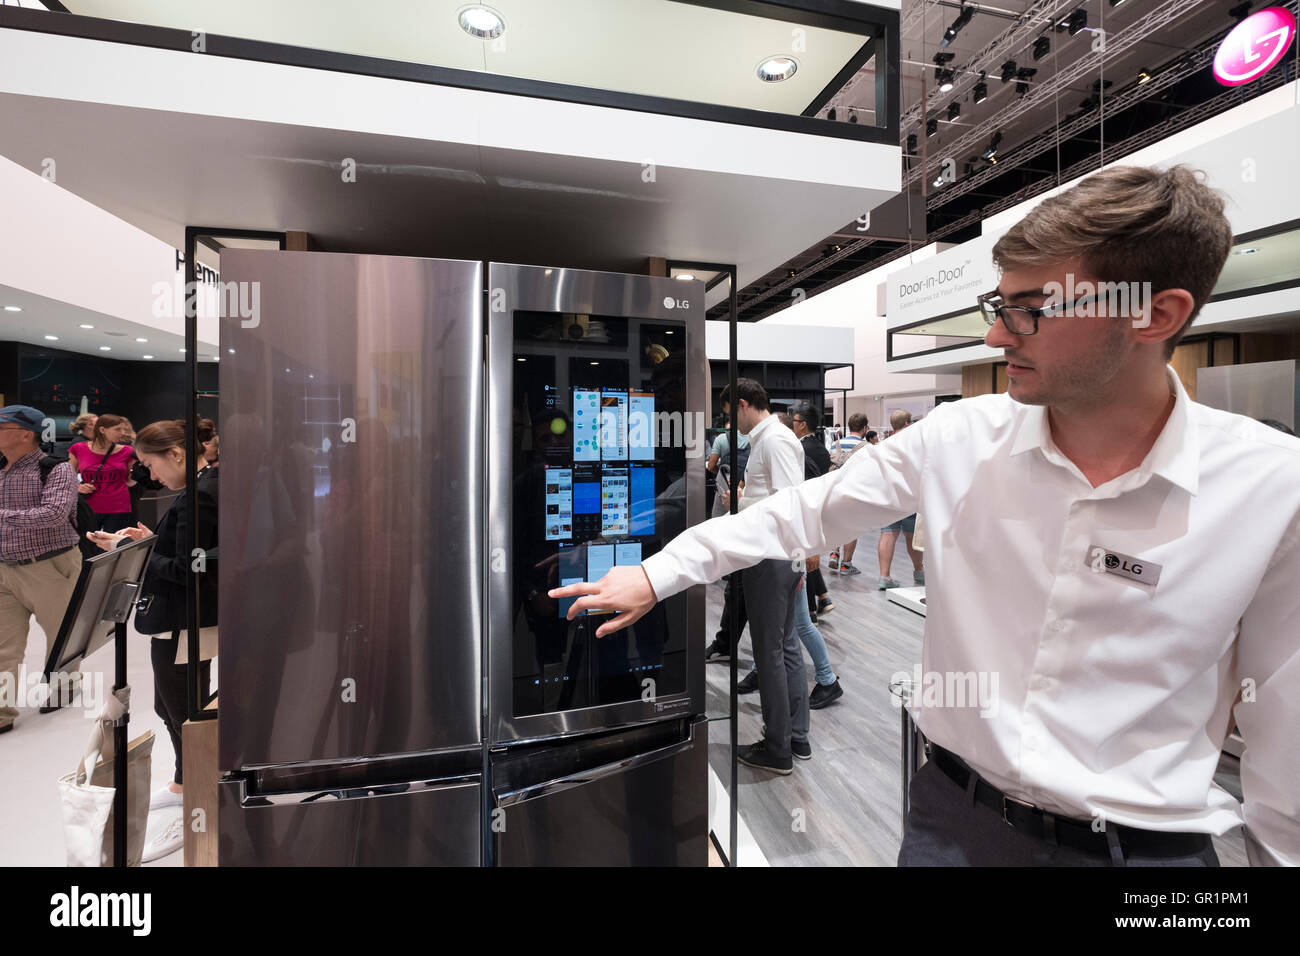 LG réfrigérateur / congélateur avec grand écran tactile à 2016 IFA (Internationale Funkausstellung Berlin), Berlin, Allemagne Banque D'Images